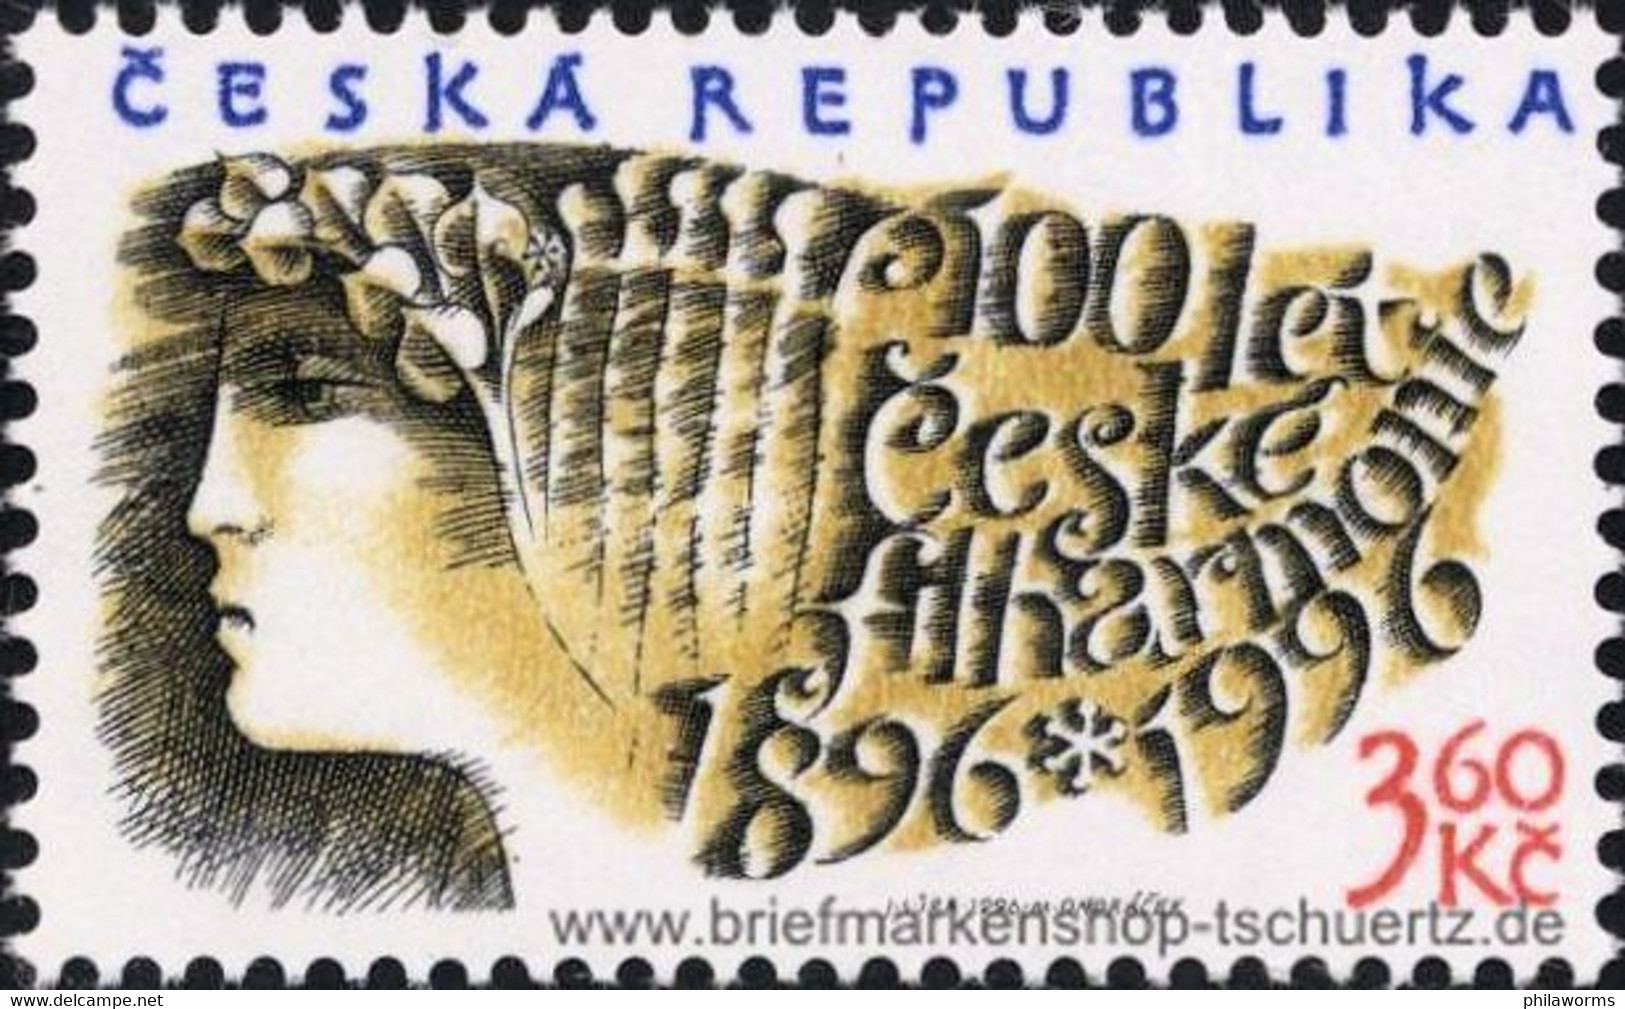 Tschechien 1996, Mi. 100 ** - Neufs